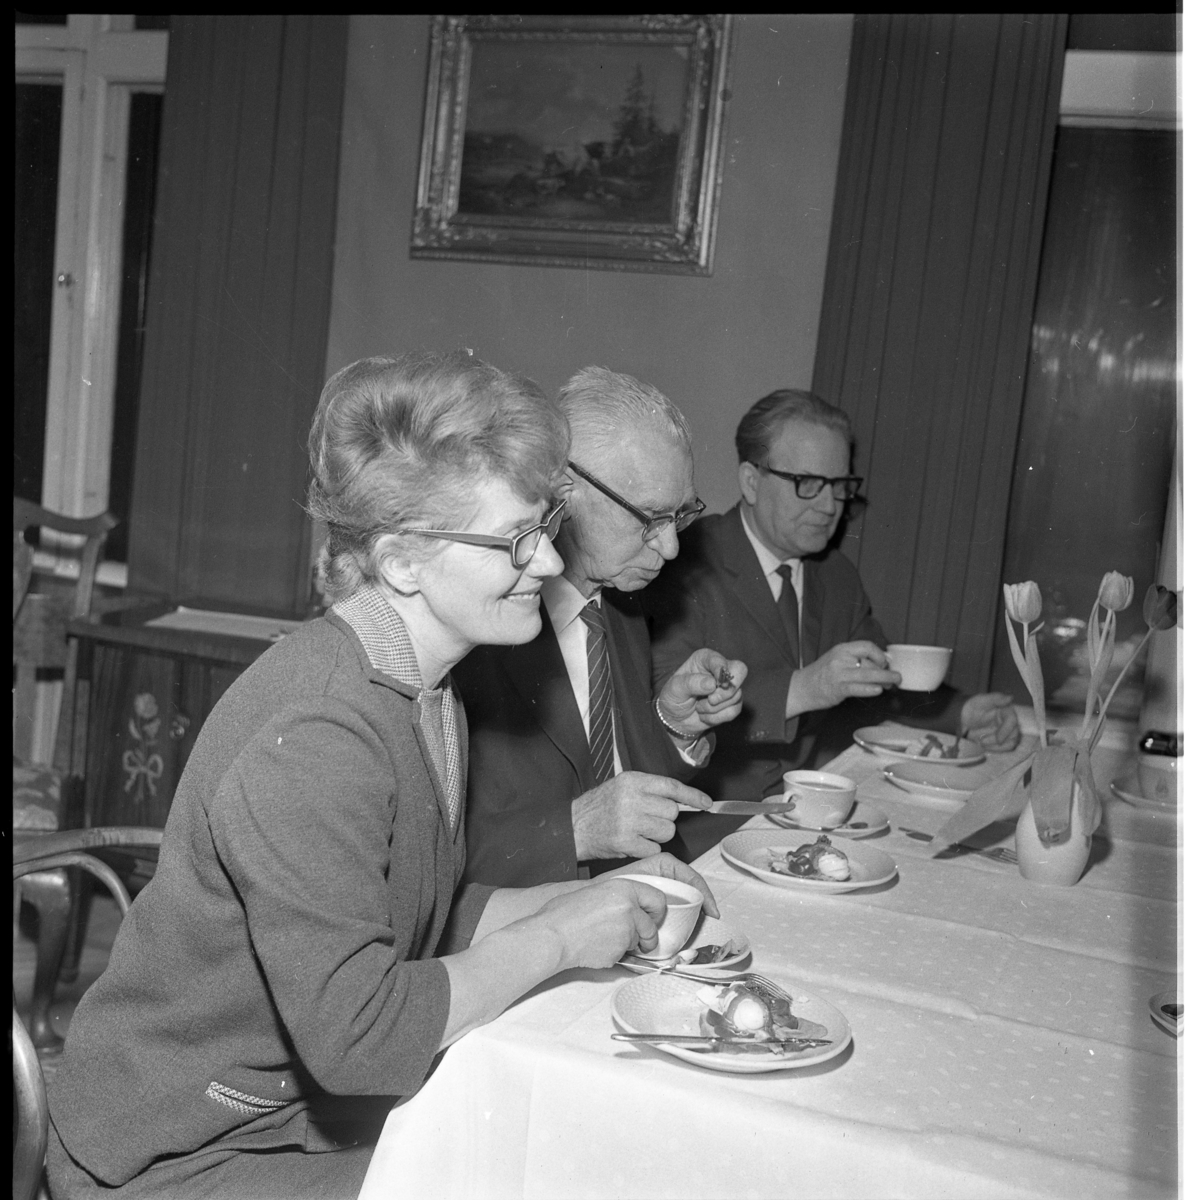 Gränna lottakår firar 35 årsjubileum med tesupé i Ribbagårdens festvåning i Gränna. Till bords, från vänster, okänd kvinna samt Enoc Enehed och Tage Grennfelt.